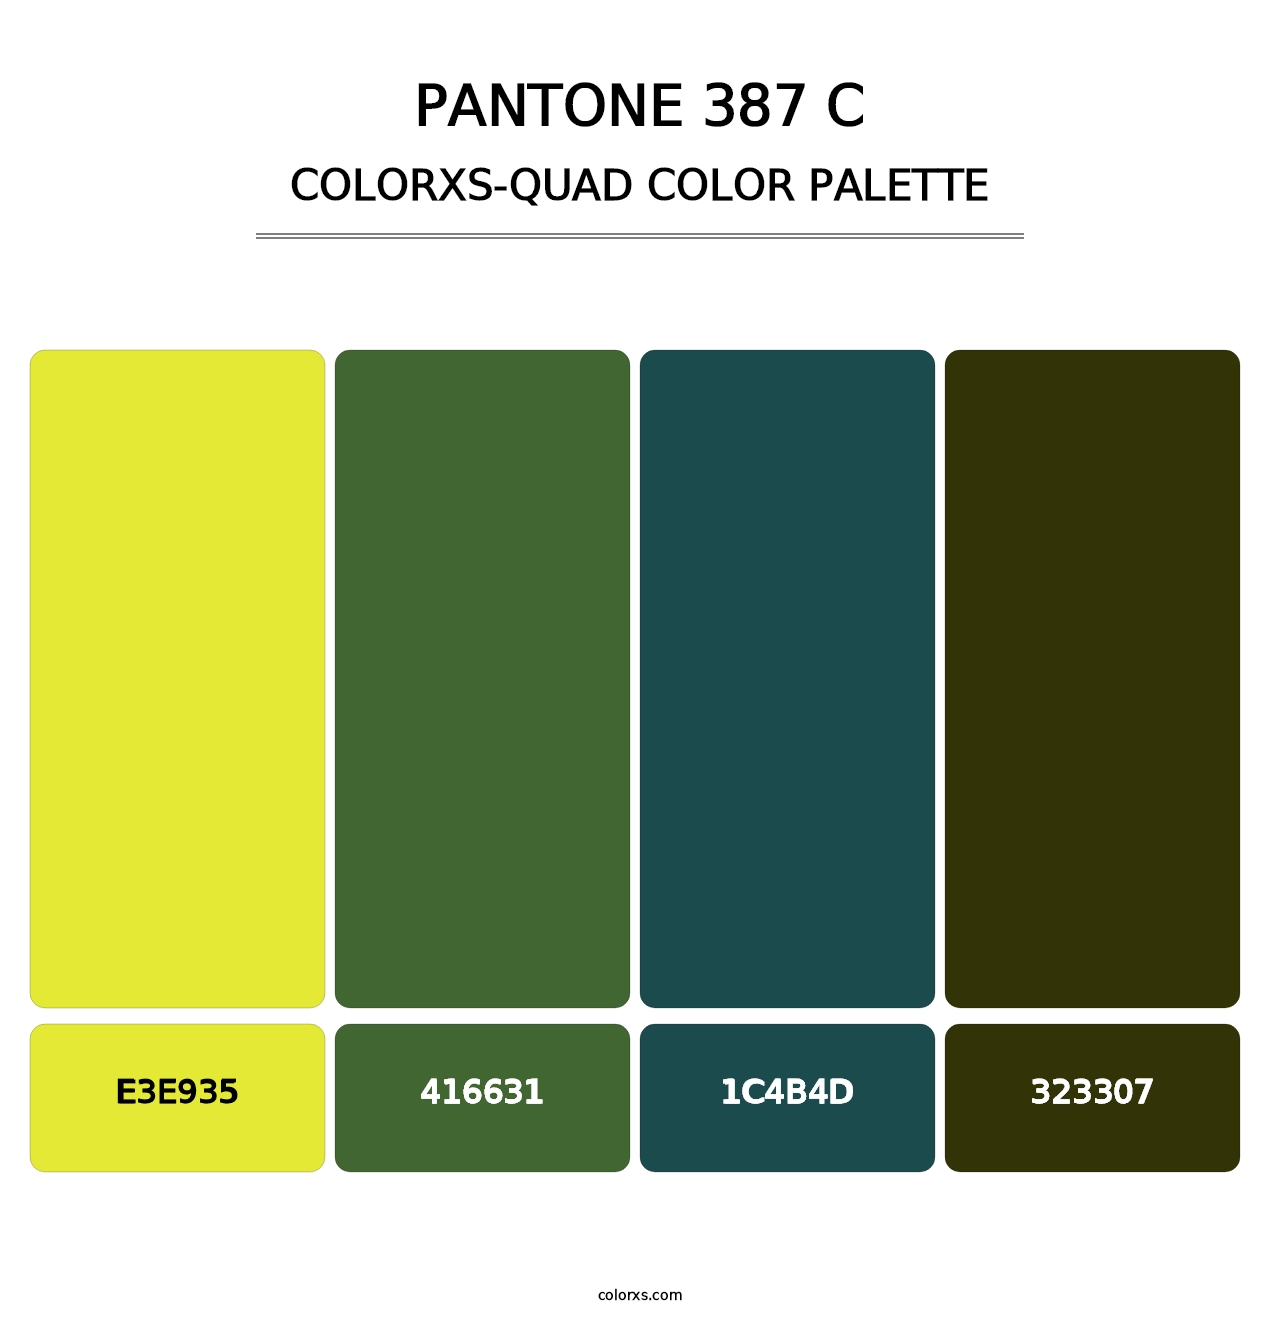 PANTONE 387 C - Colorxs Quad Palette